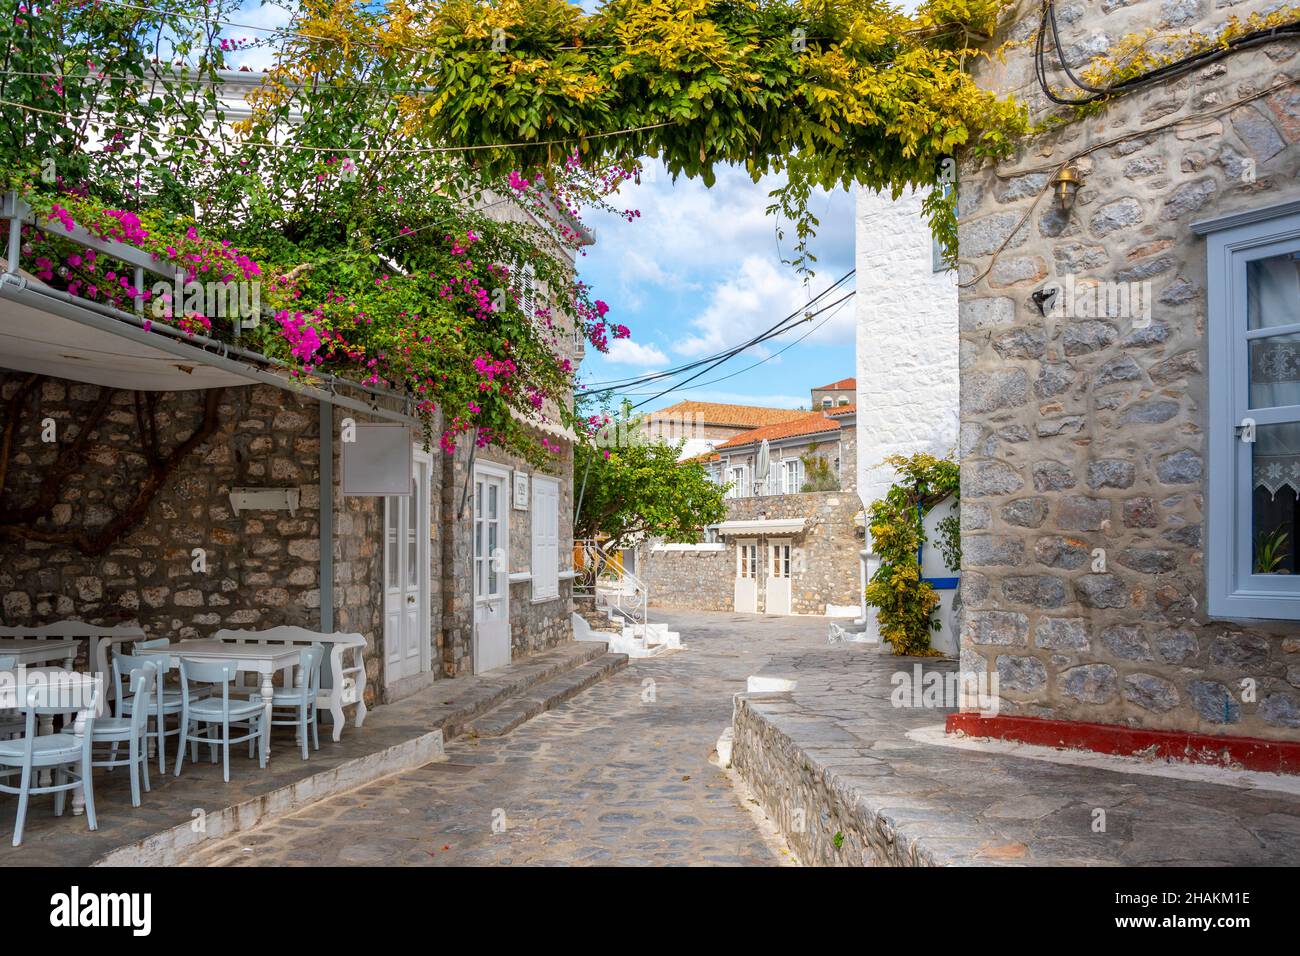 Une rue pittoresque de maisons en pierre et blanchies à la chaux et un petit café en plein air dans le village de la petite île grecque d'Hydra, en Grèce. Banque D'Images